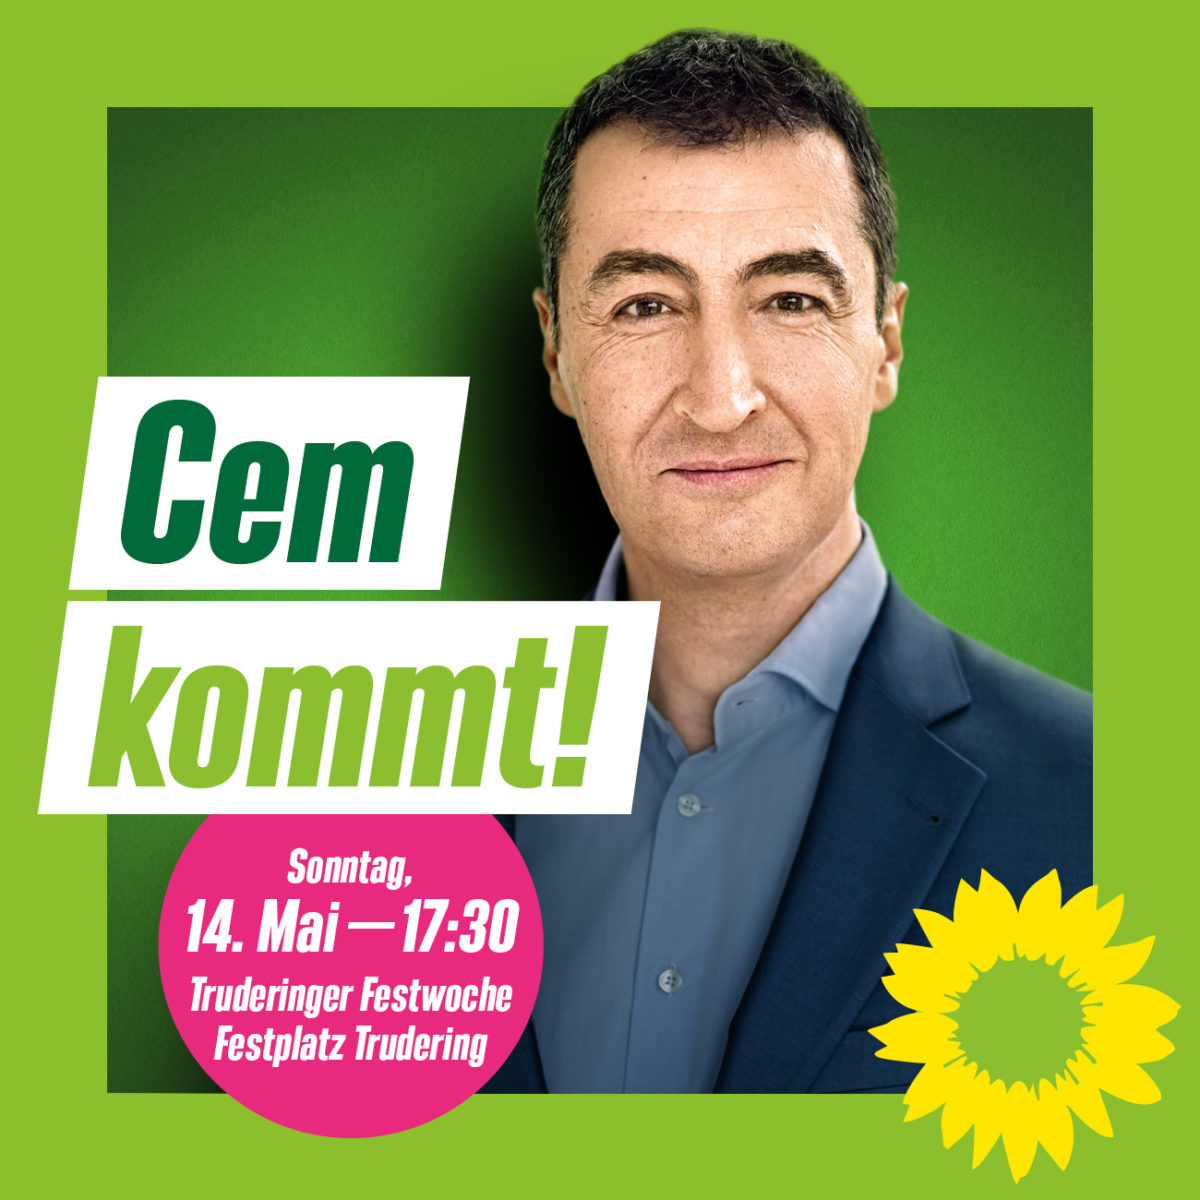 Plakat mit Überschrift Cem kommt. Es ist Cem Özdemir zu sehen, so wie das Logo der Grünen, eine gelbe Sonnenblume.